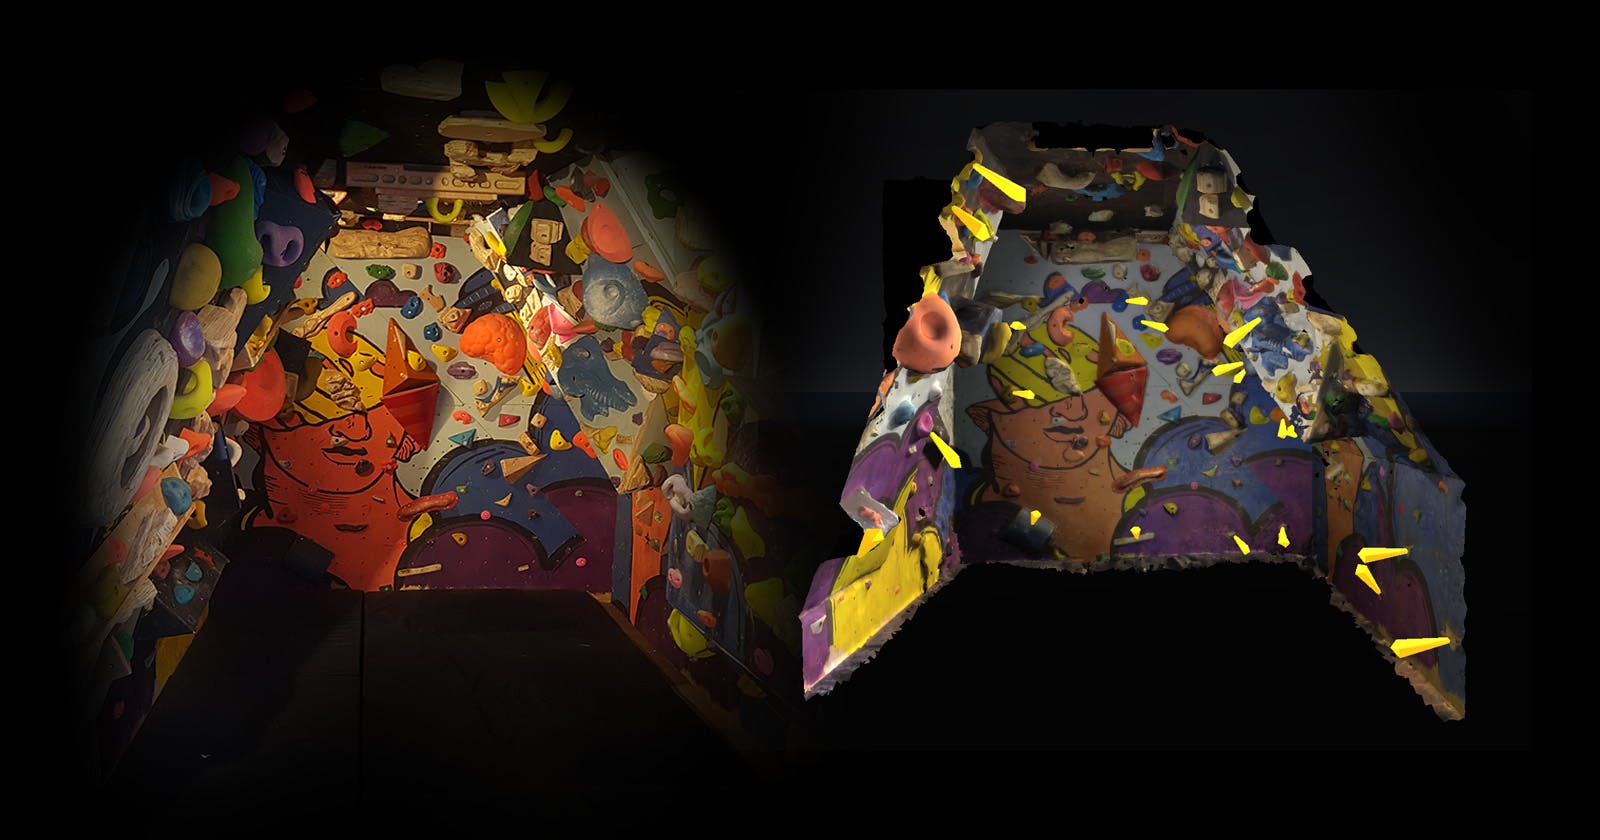 Virtual Realitifying my real climbing wall, part 2